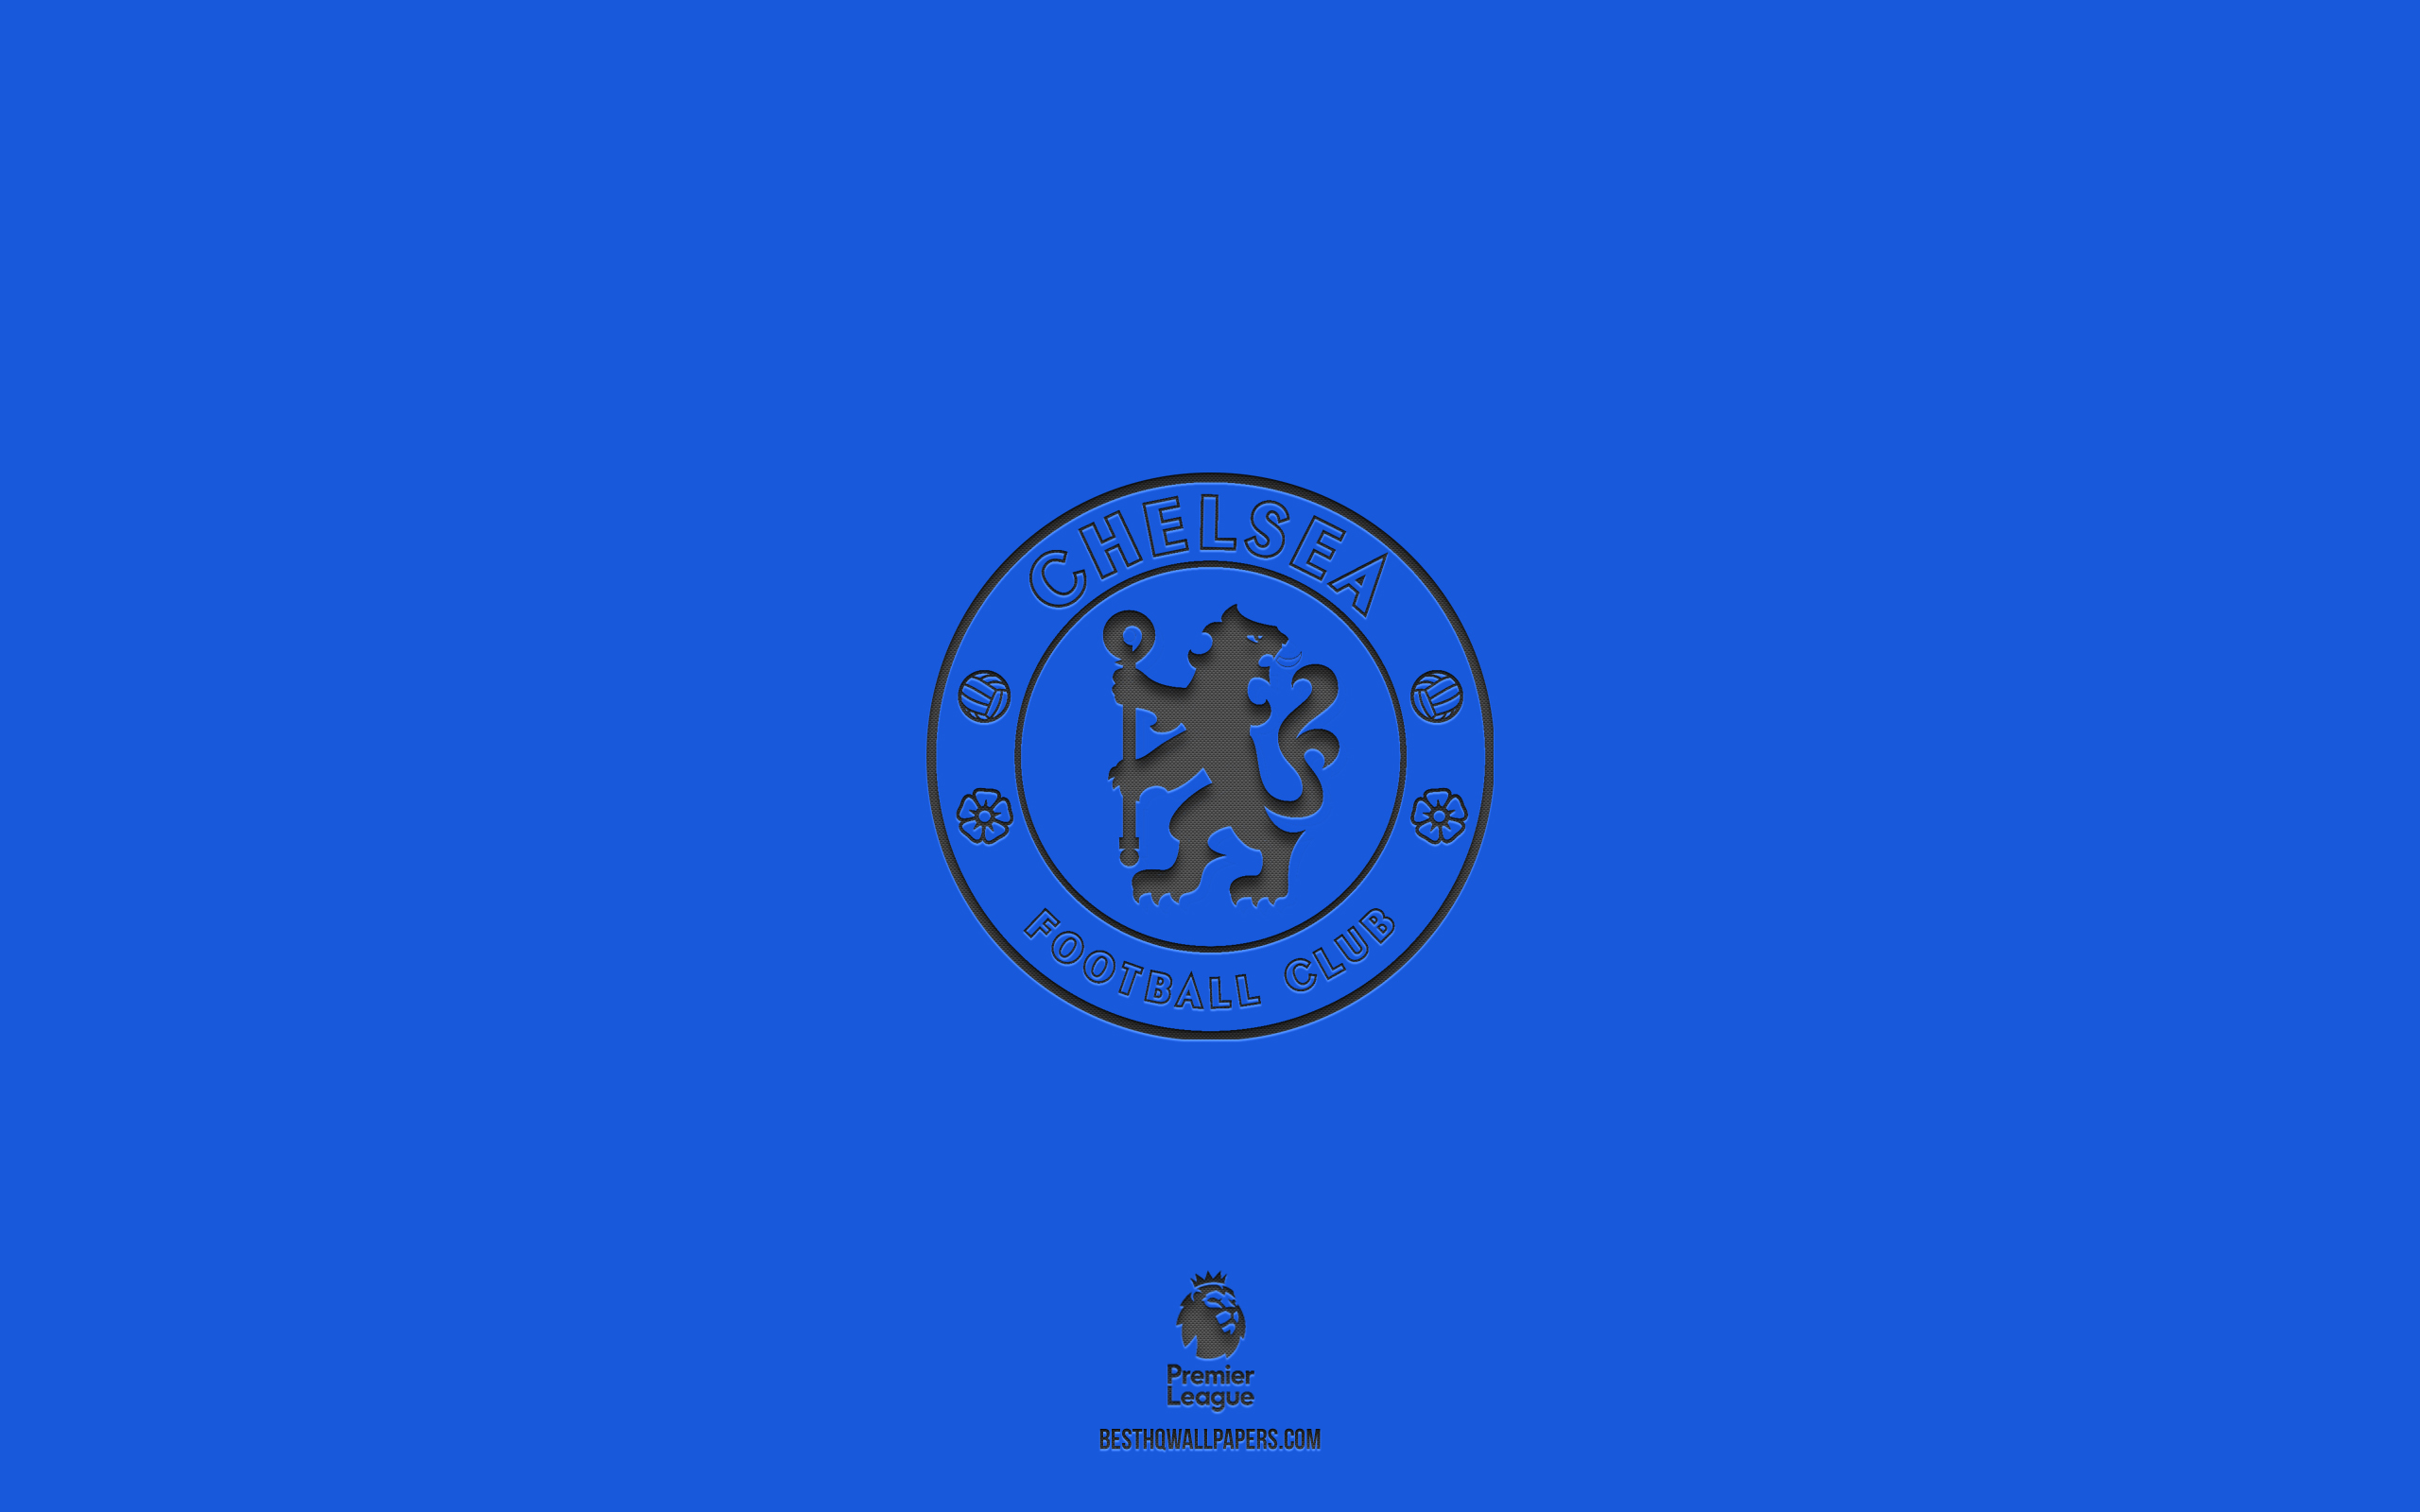 ダウンロード画像 チェルシーfc 青い背景 イングランドのサッカーチーム チェルシーfcエンブレム プレミアリーグ イギリス フットボール チェルシーfcロゴ 画面の解像度 2560x1600 壁紙デスクトップ上